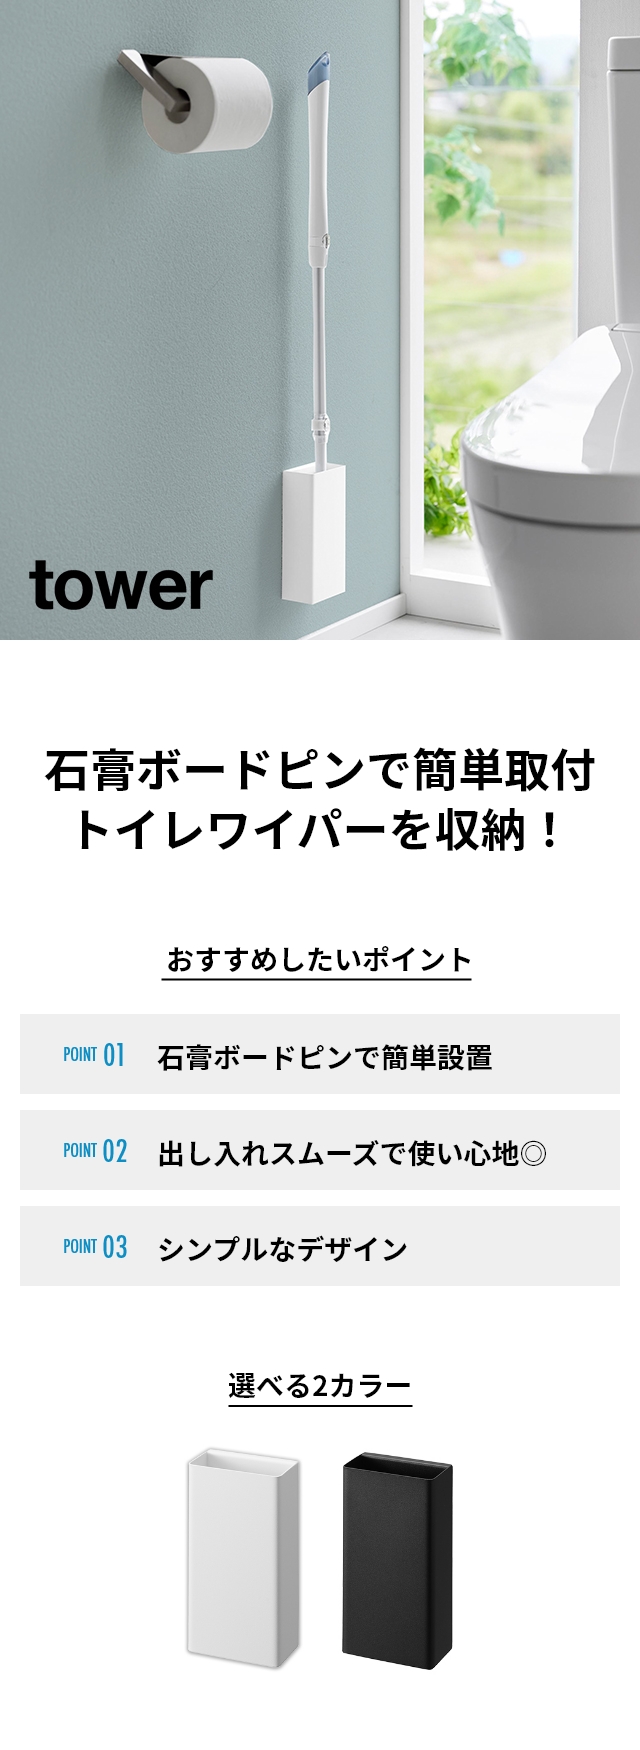 tower(タワー) 石こうボード壁対応トイレワイパーホルダー